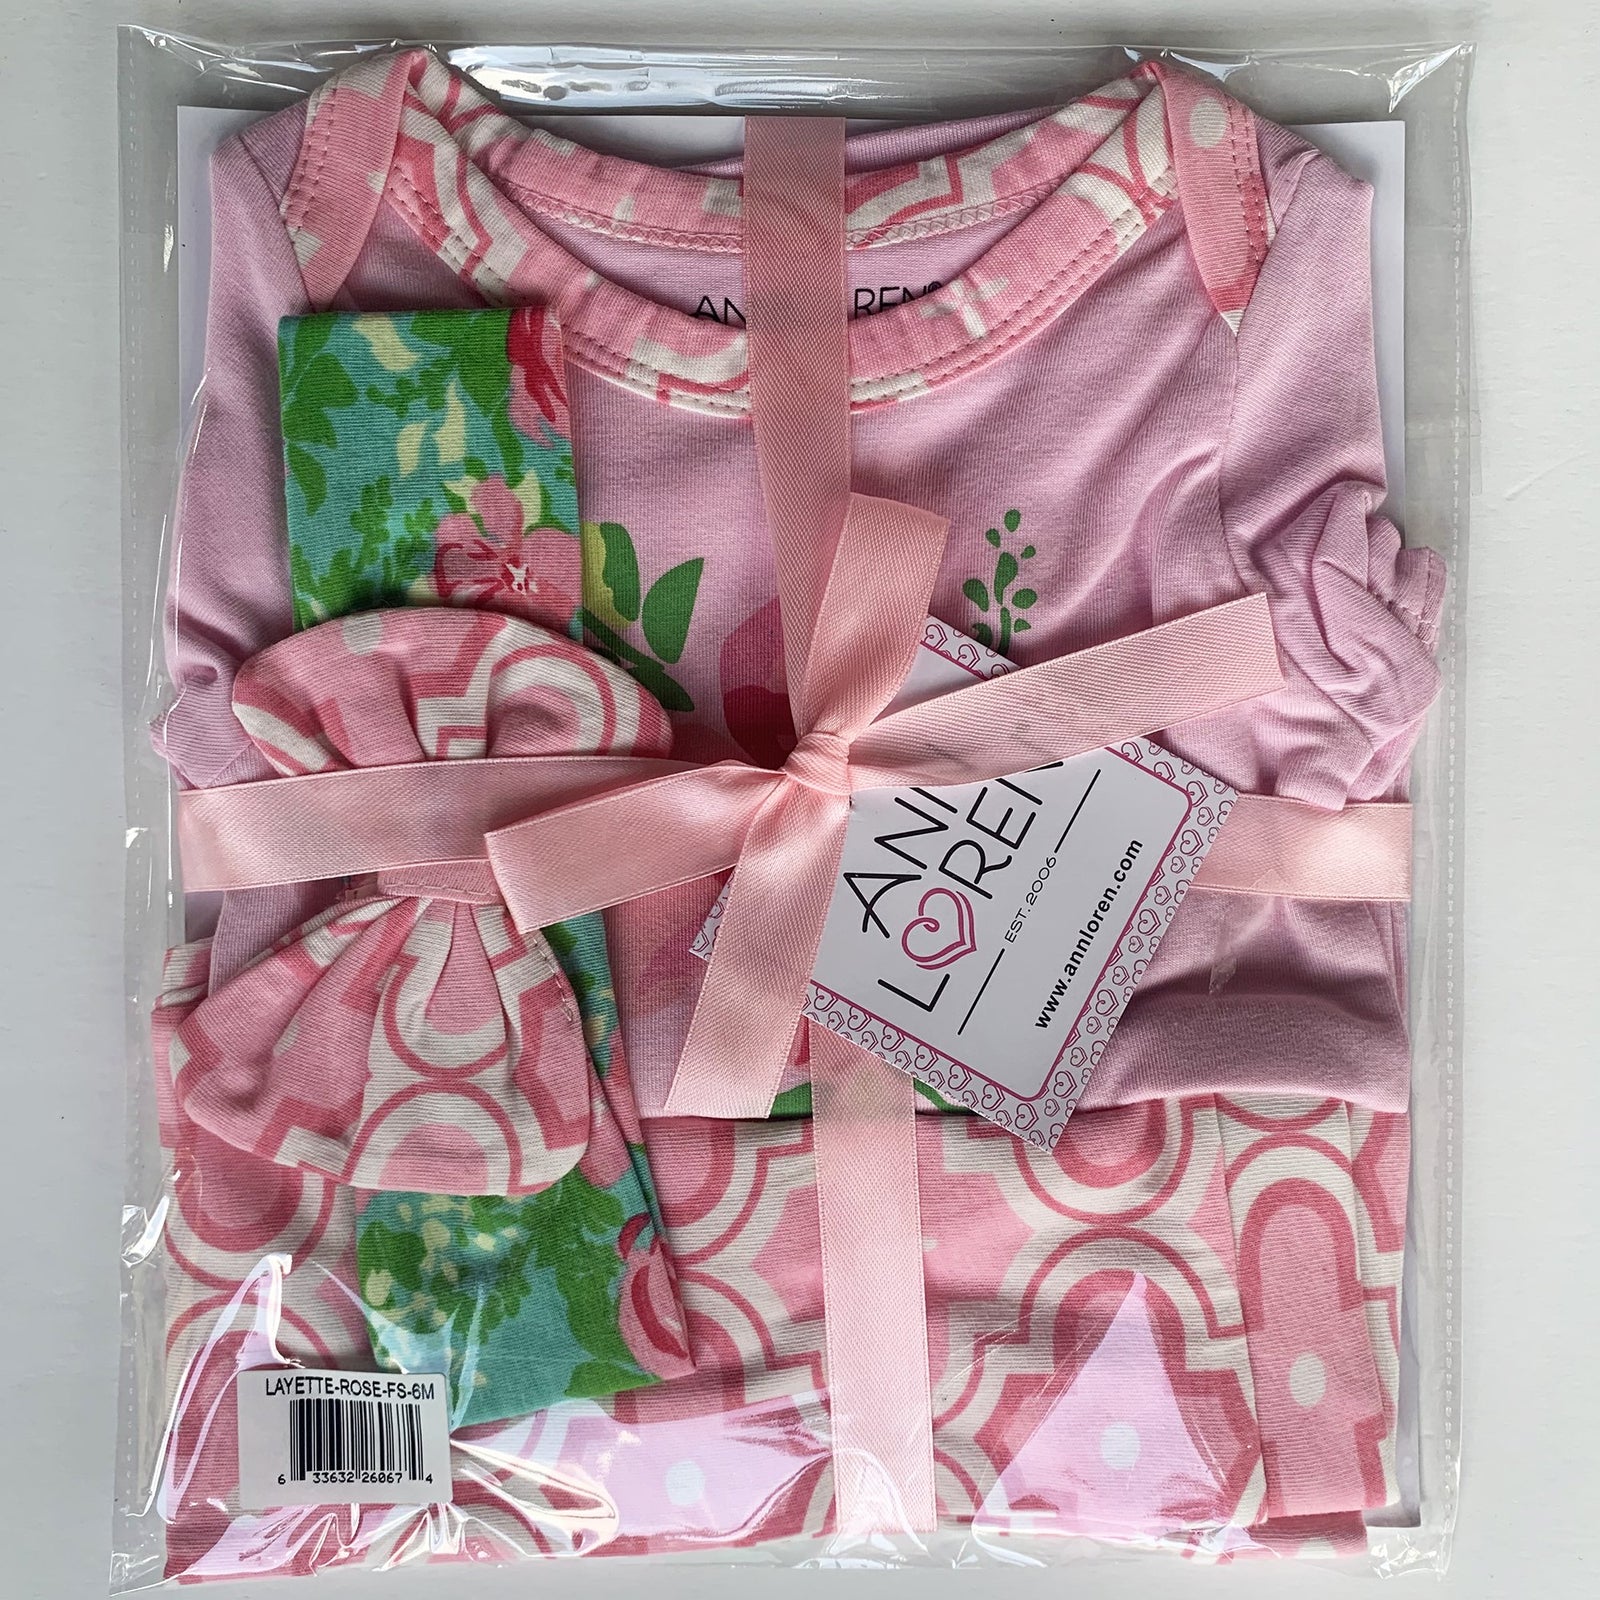 Pink 3pc Gift Set Baby Girls Layette Arabesque Floral Onesie Pants Headband by Annloren